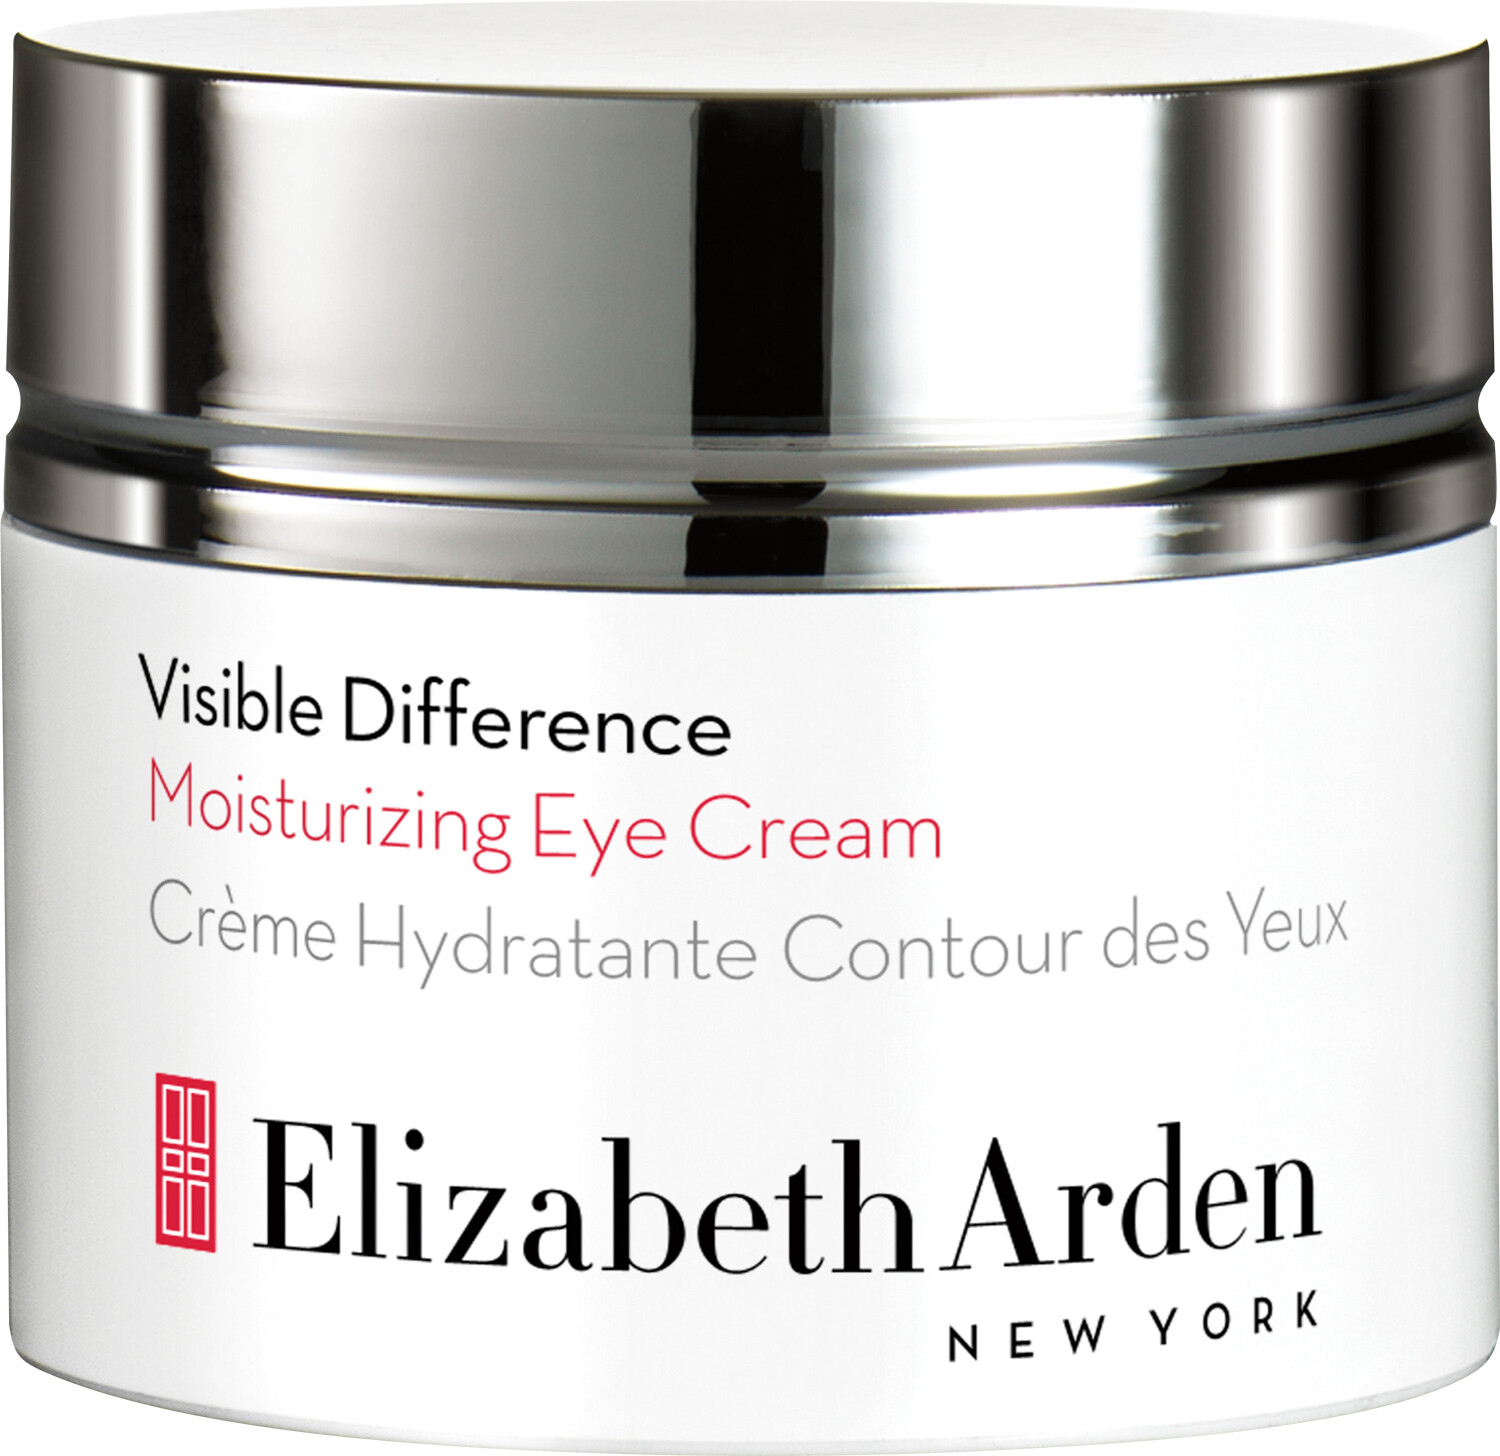 Elizabeth Arden Visible Difference Moisturizing Eye Cream 15ml